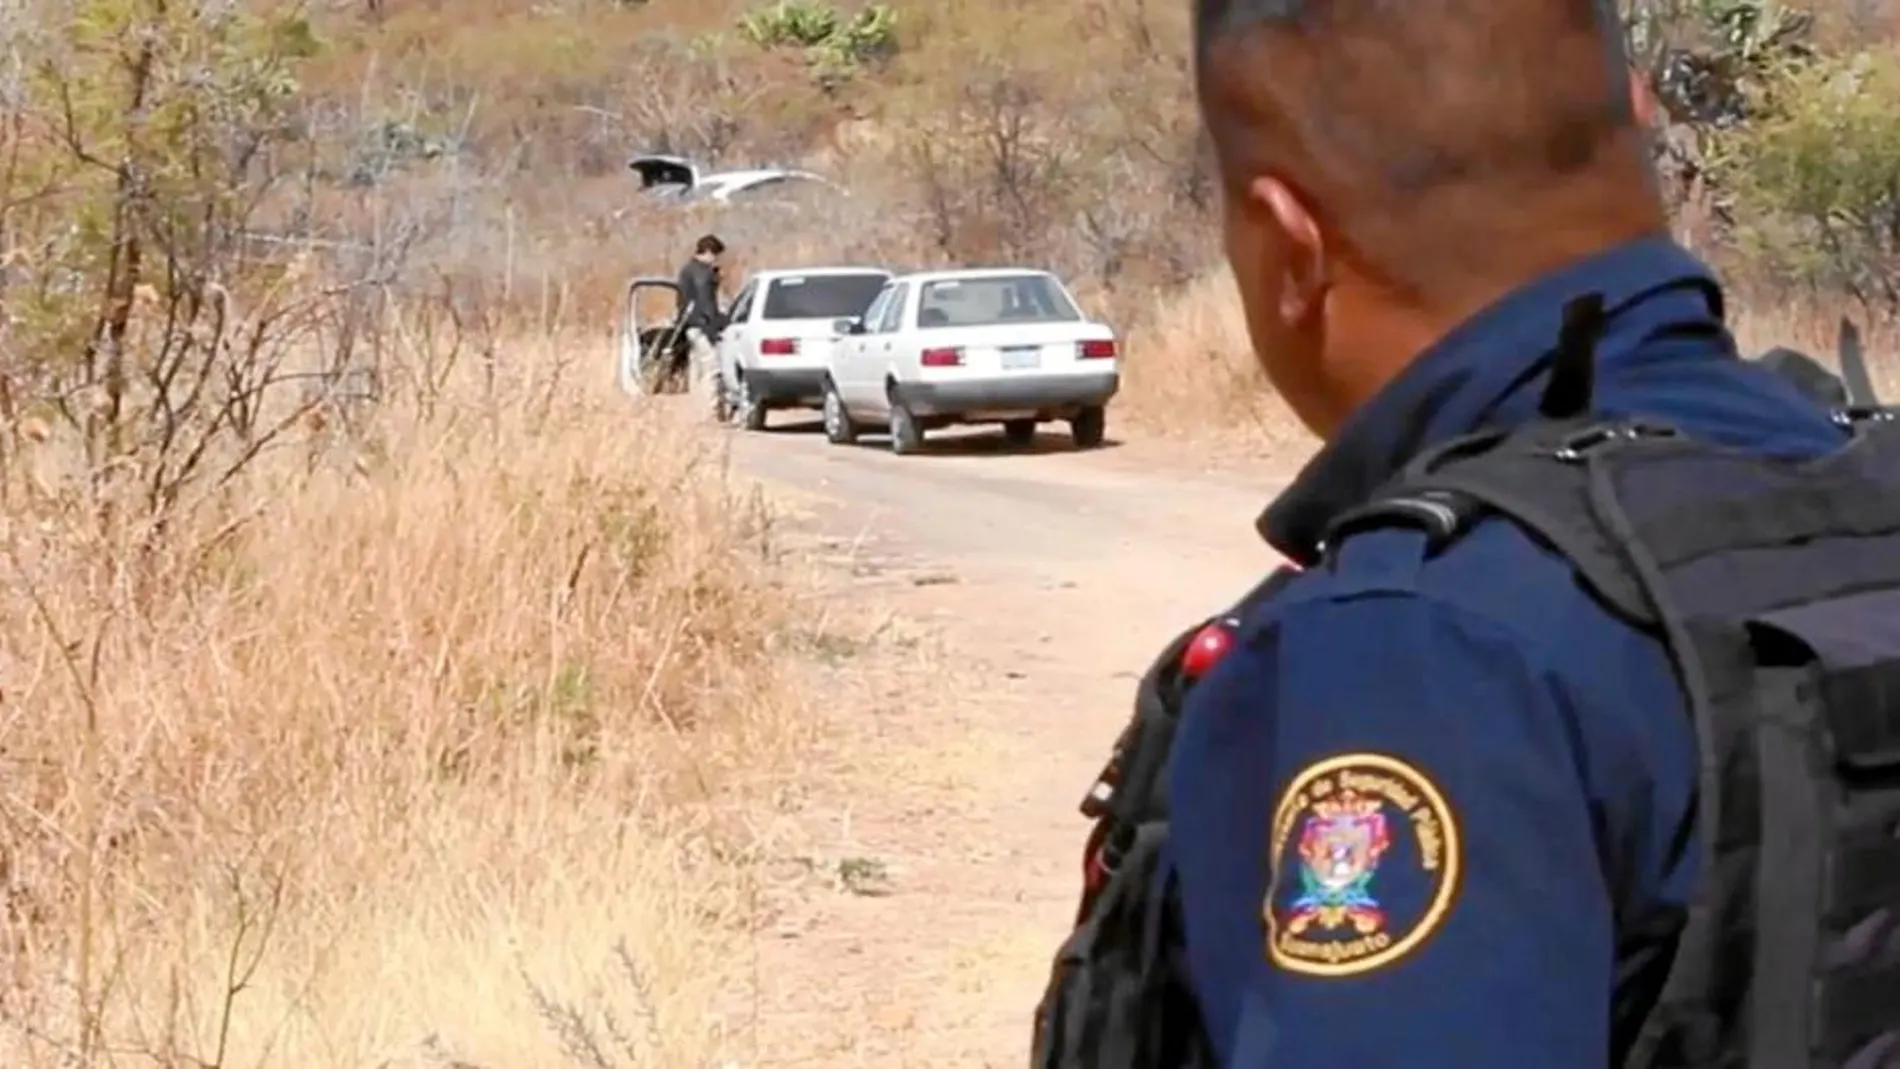 Los agentes mexicanos inspeccionan el coche del fallecido, hallado en Guanajuato